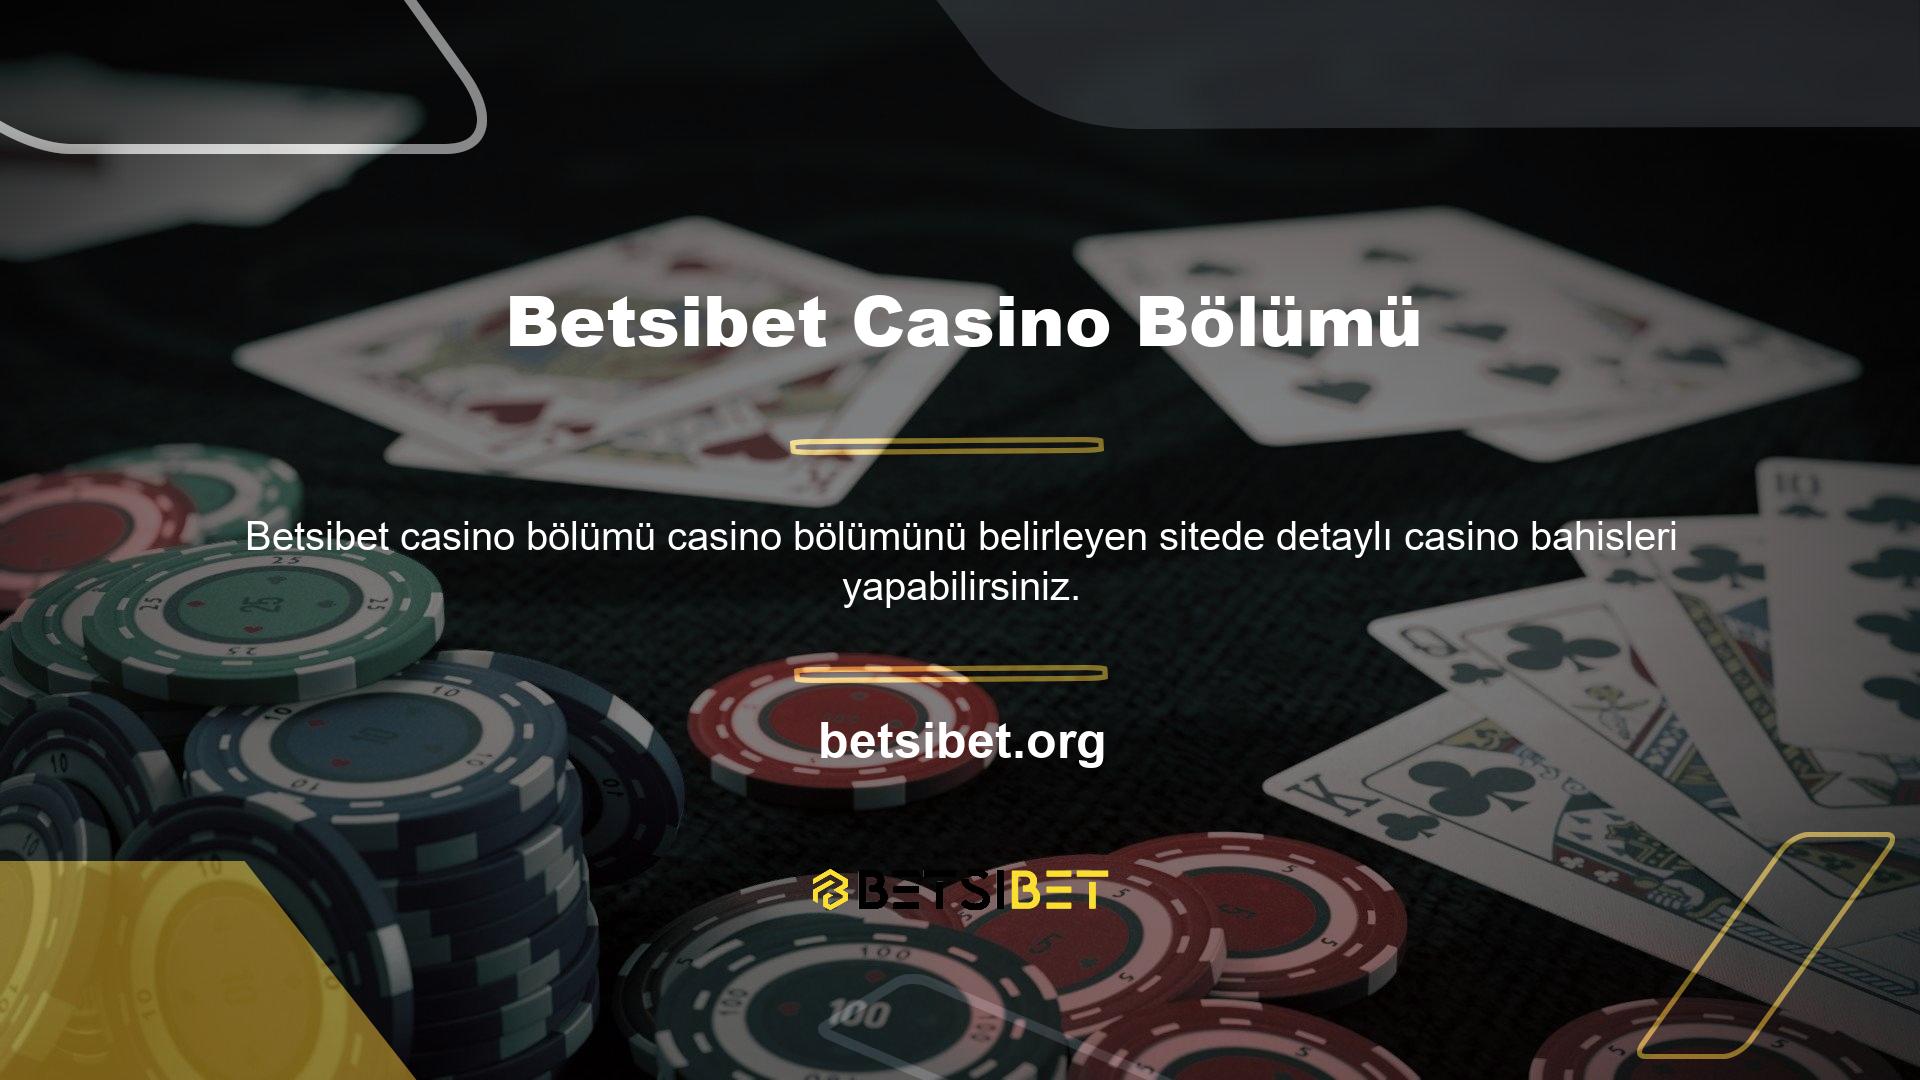 Casino, canlı casino ve poker oyunlarıyla tanınmaktadır